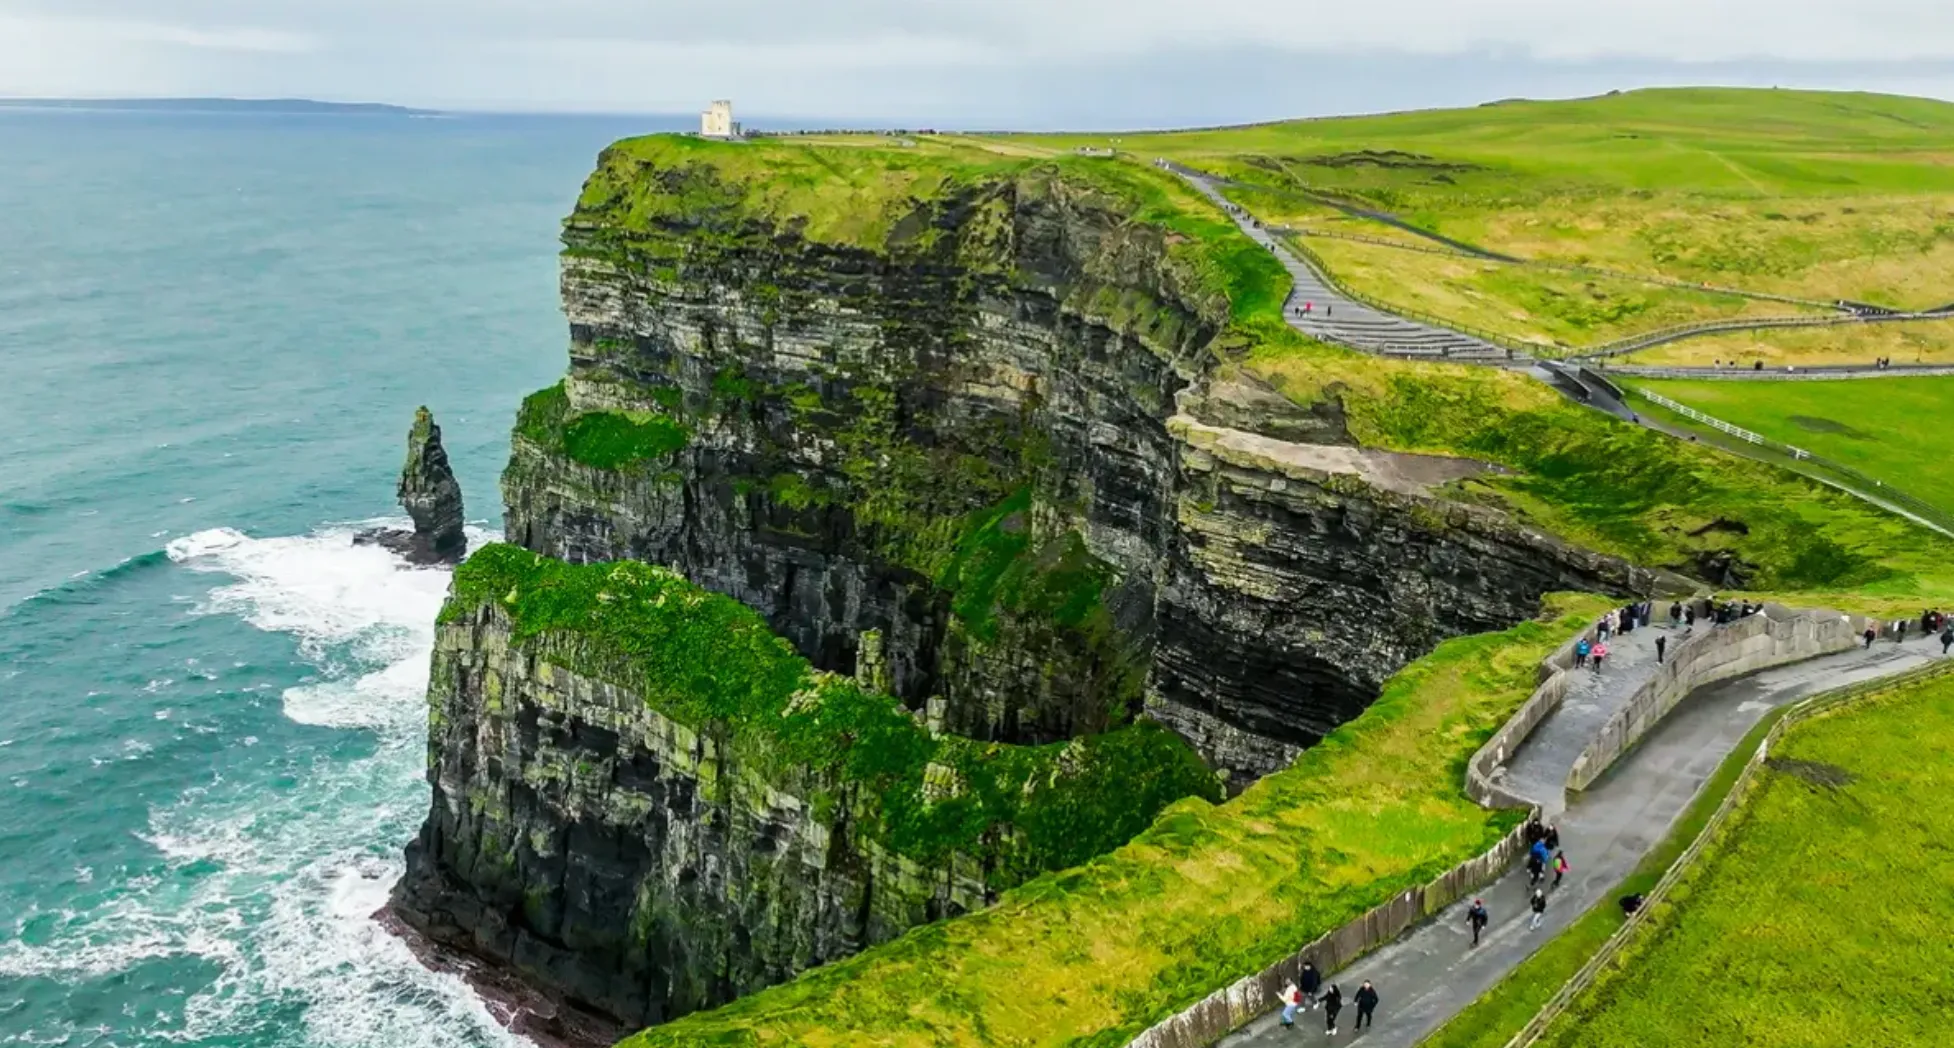 Скалы Мохер является одним из самых посещаемых мест в Ирландии.